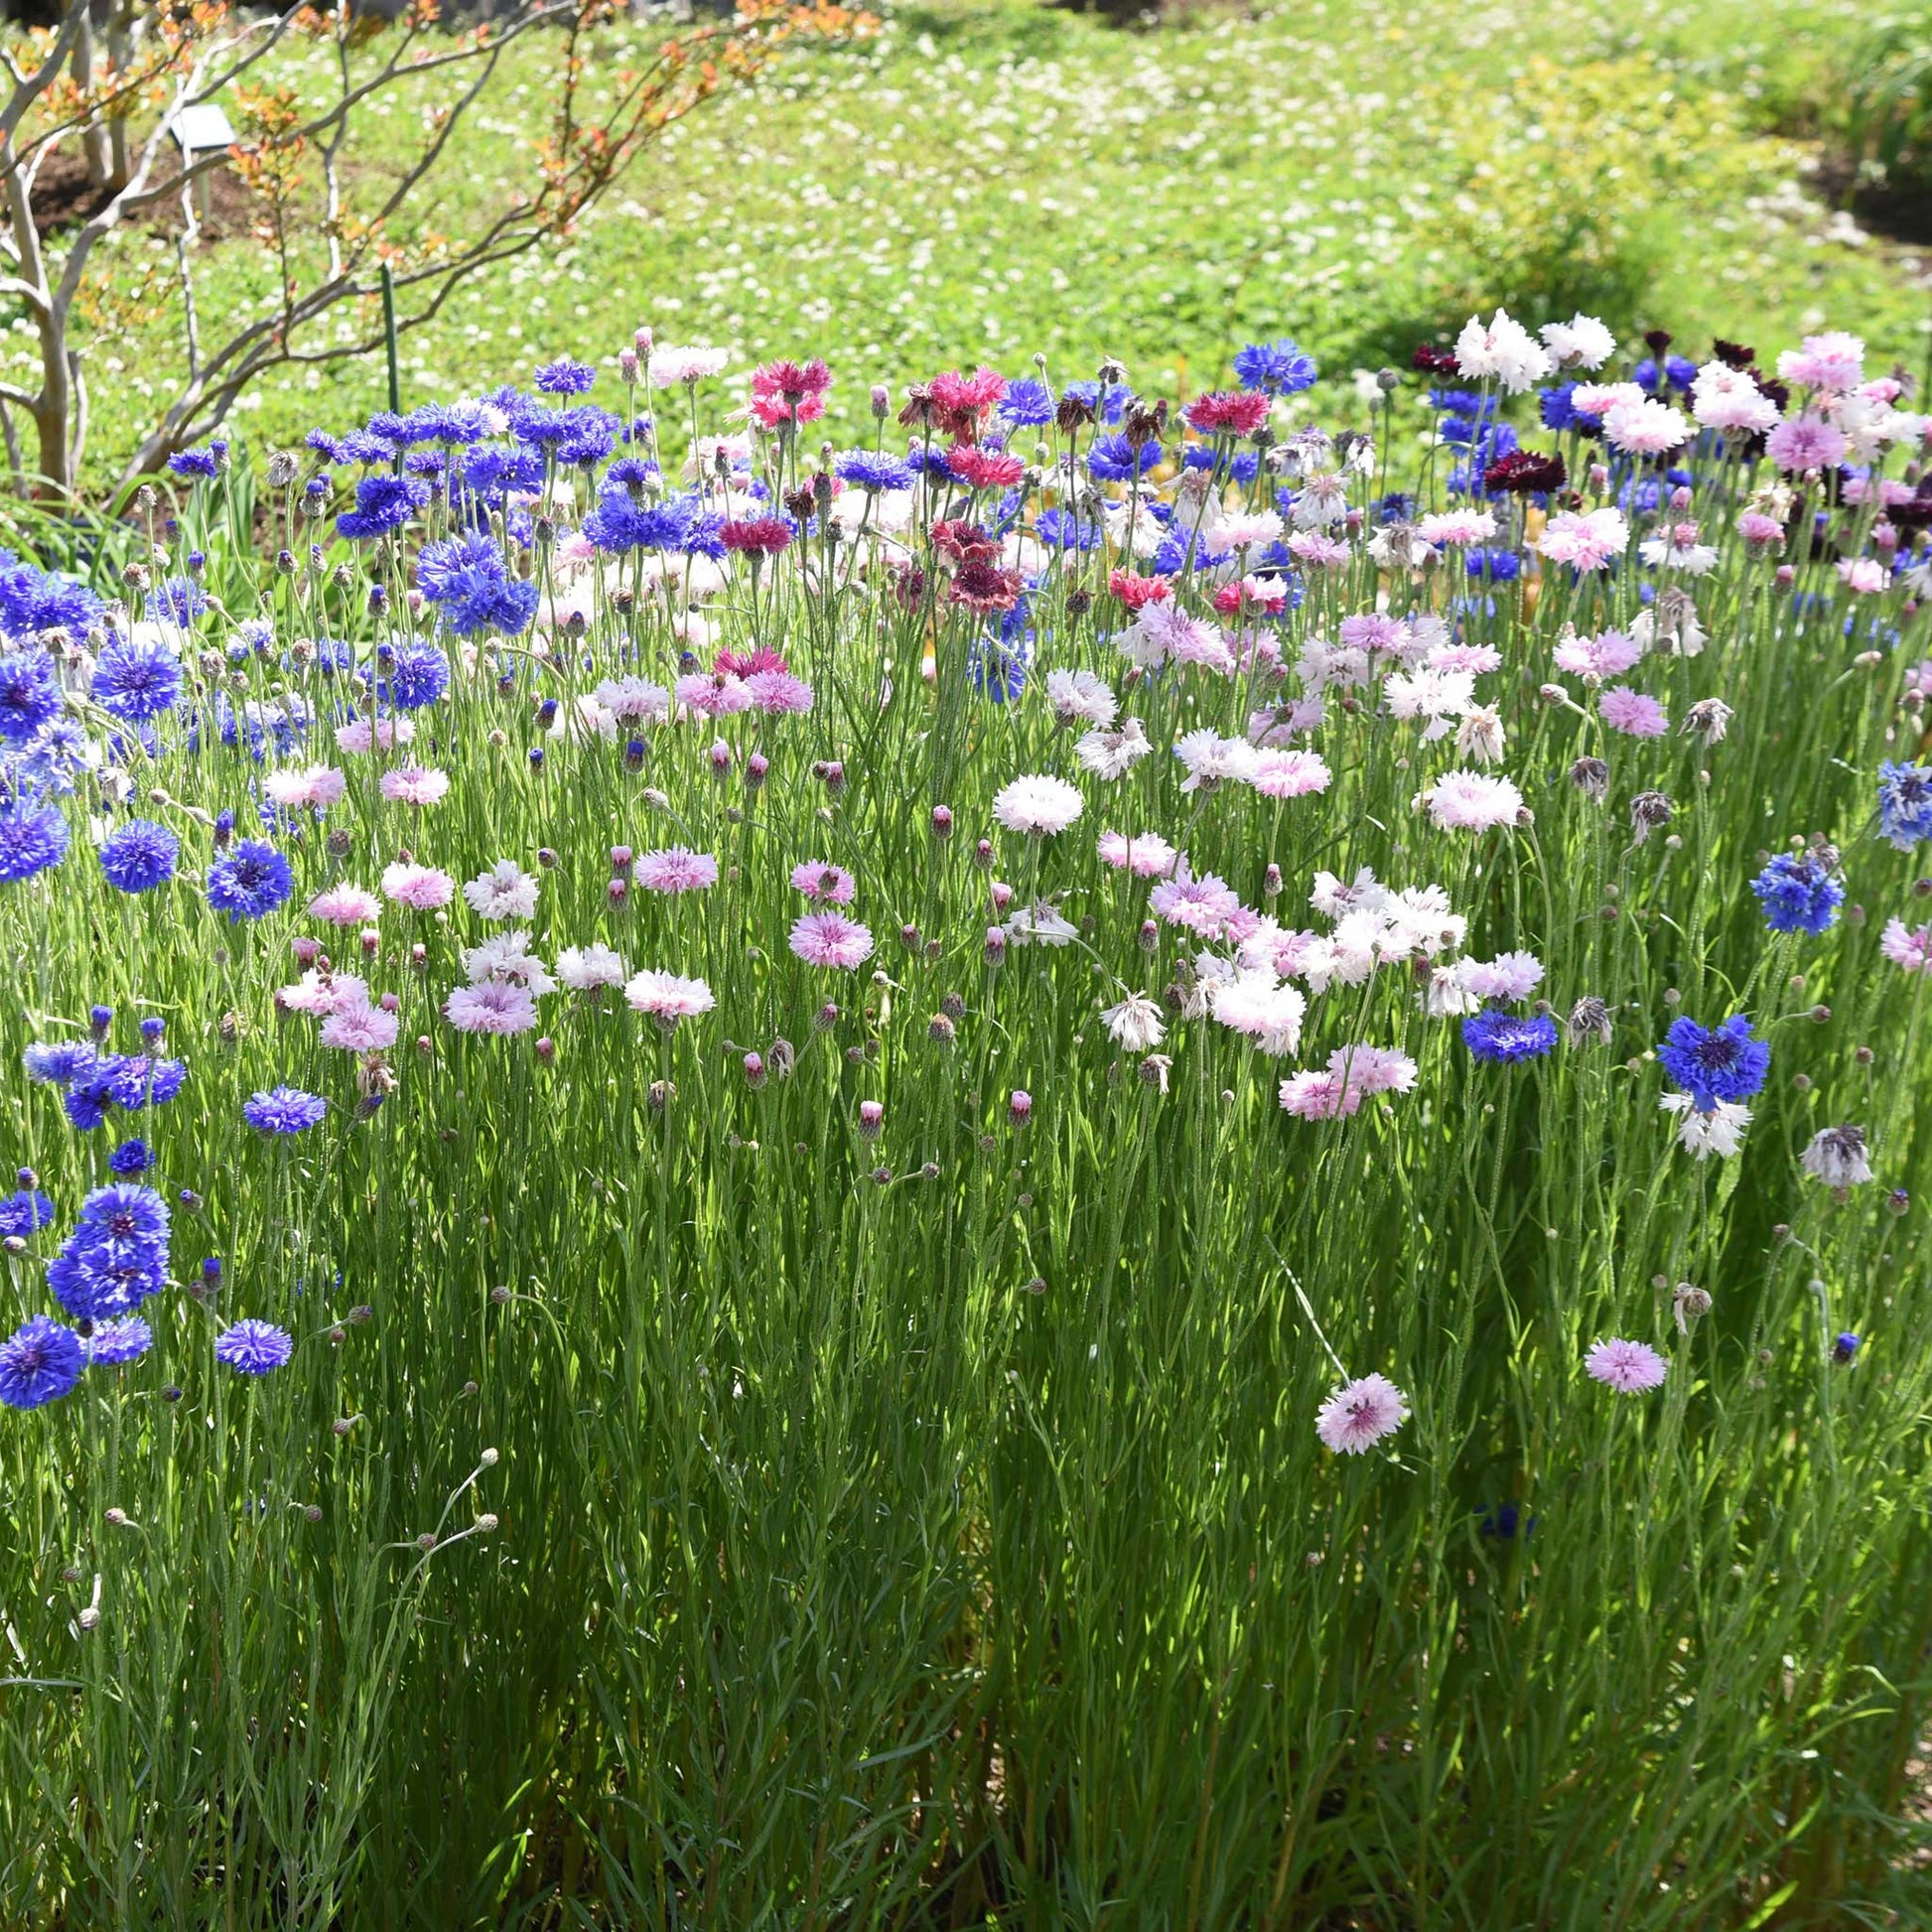 Bachelors Buttons Flower Garden Seeds - Mixed Colors - 1 Oz - Annual Bloom  Gardening Blend - Centaurea cyanus 